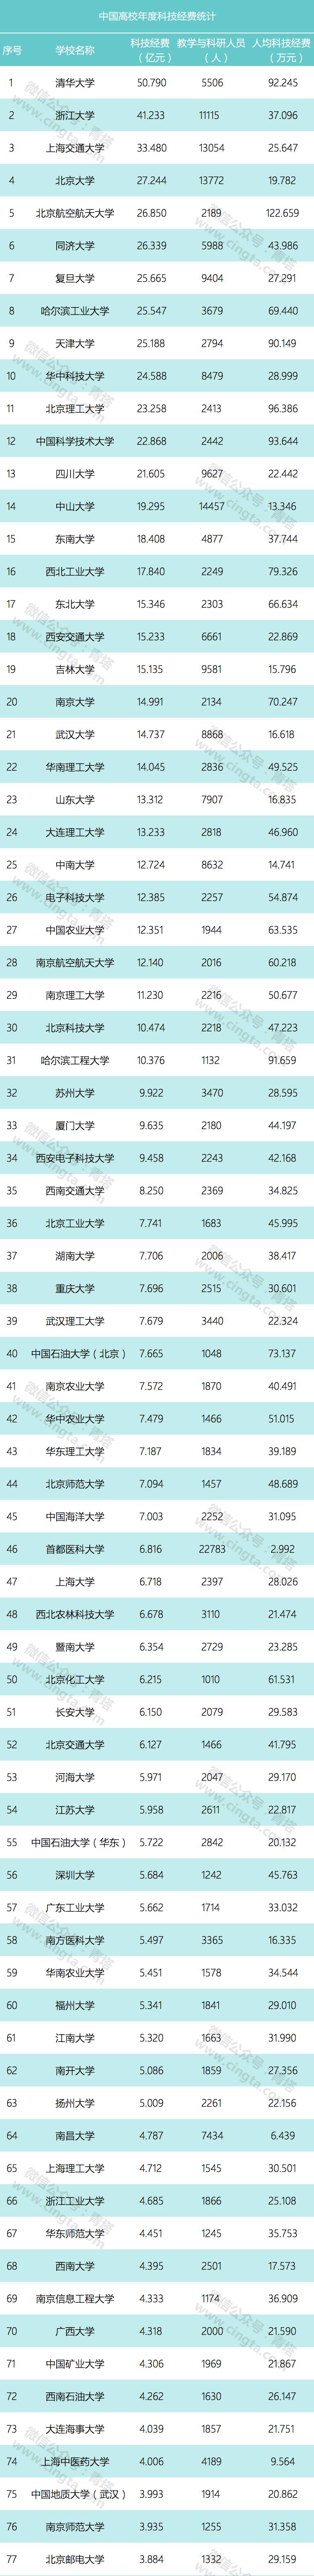 2017中国高校科研经费排名